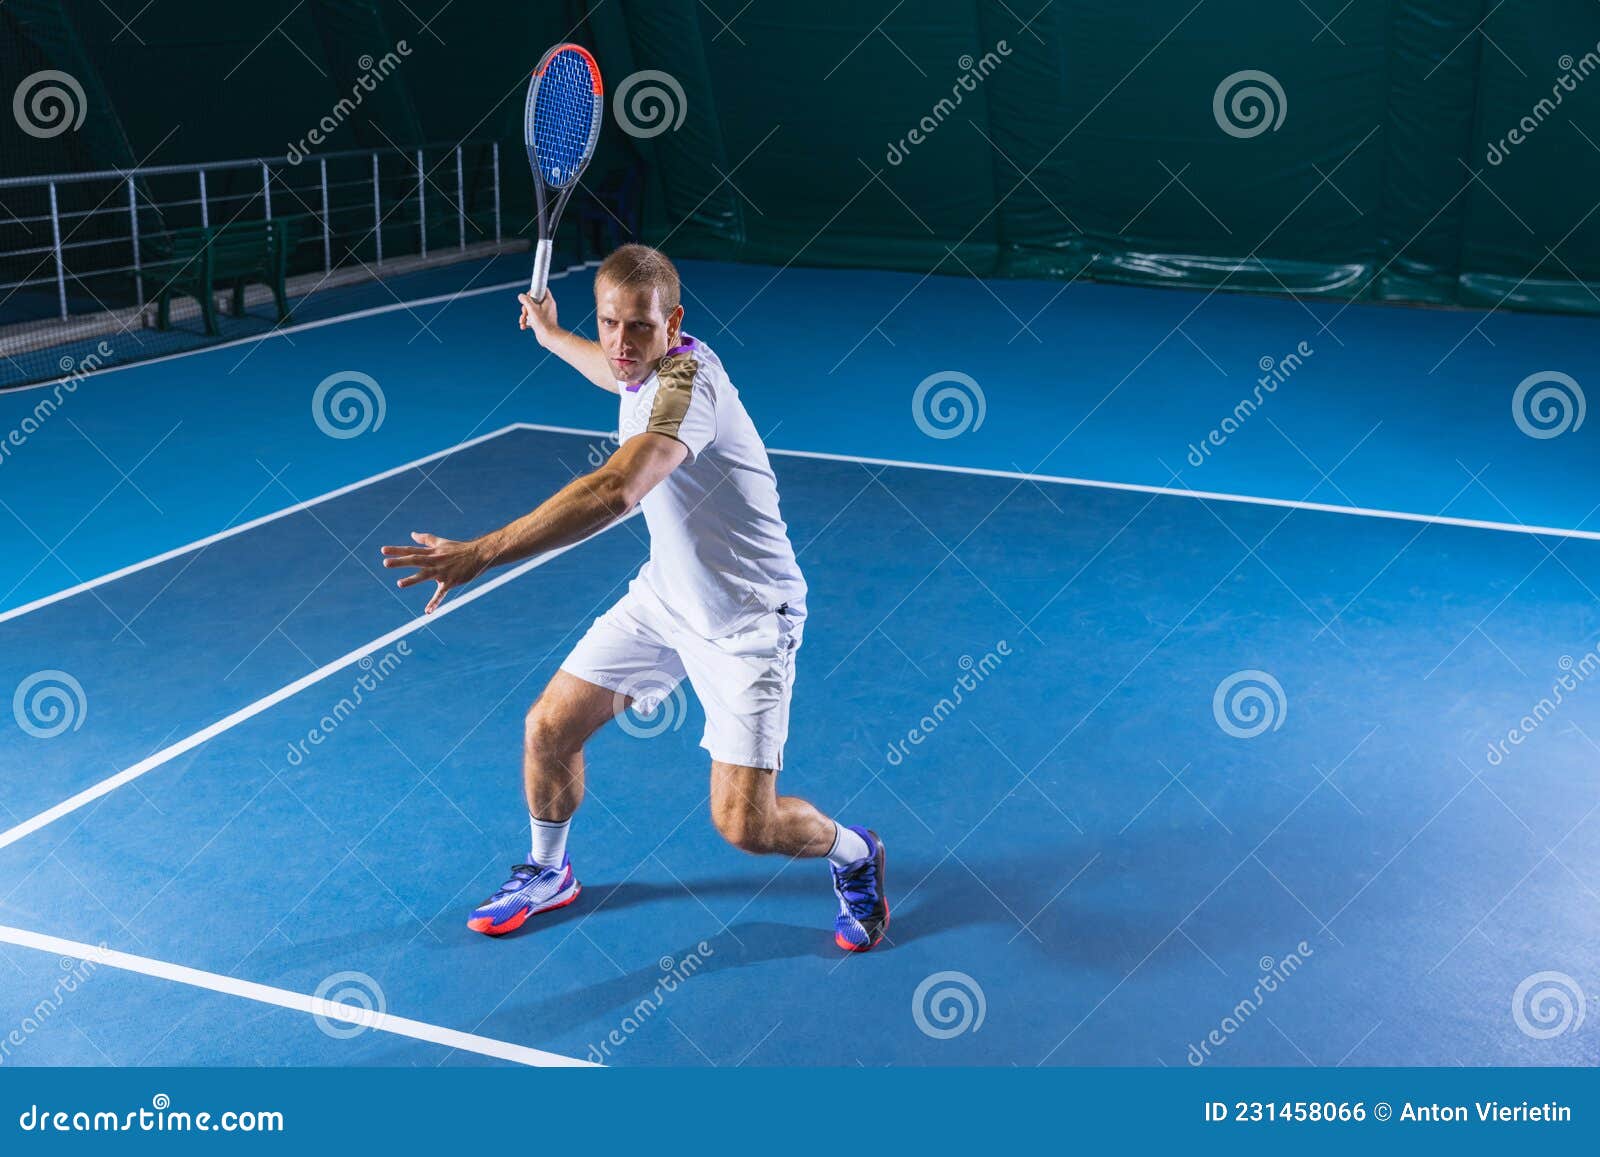 Jogo de tênis. bolas de tênis e raquete no fundo da quadra.